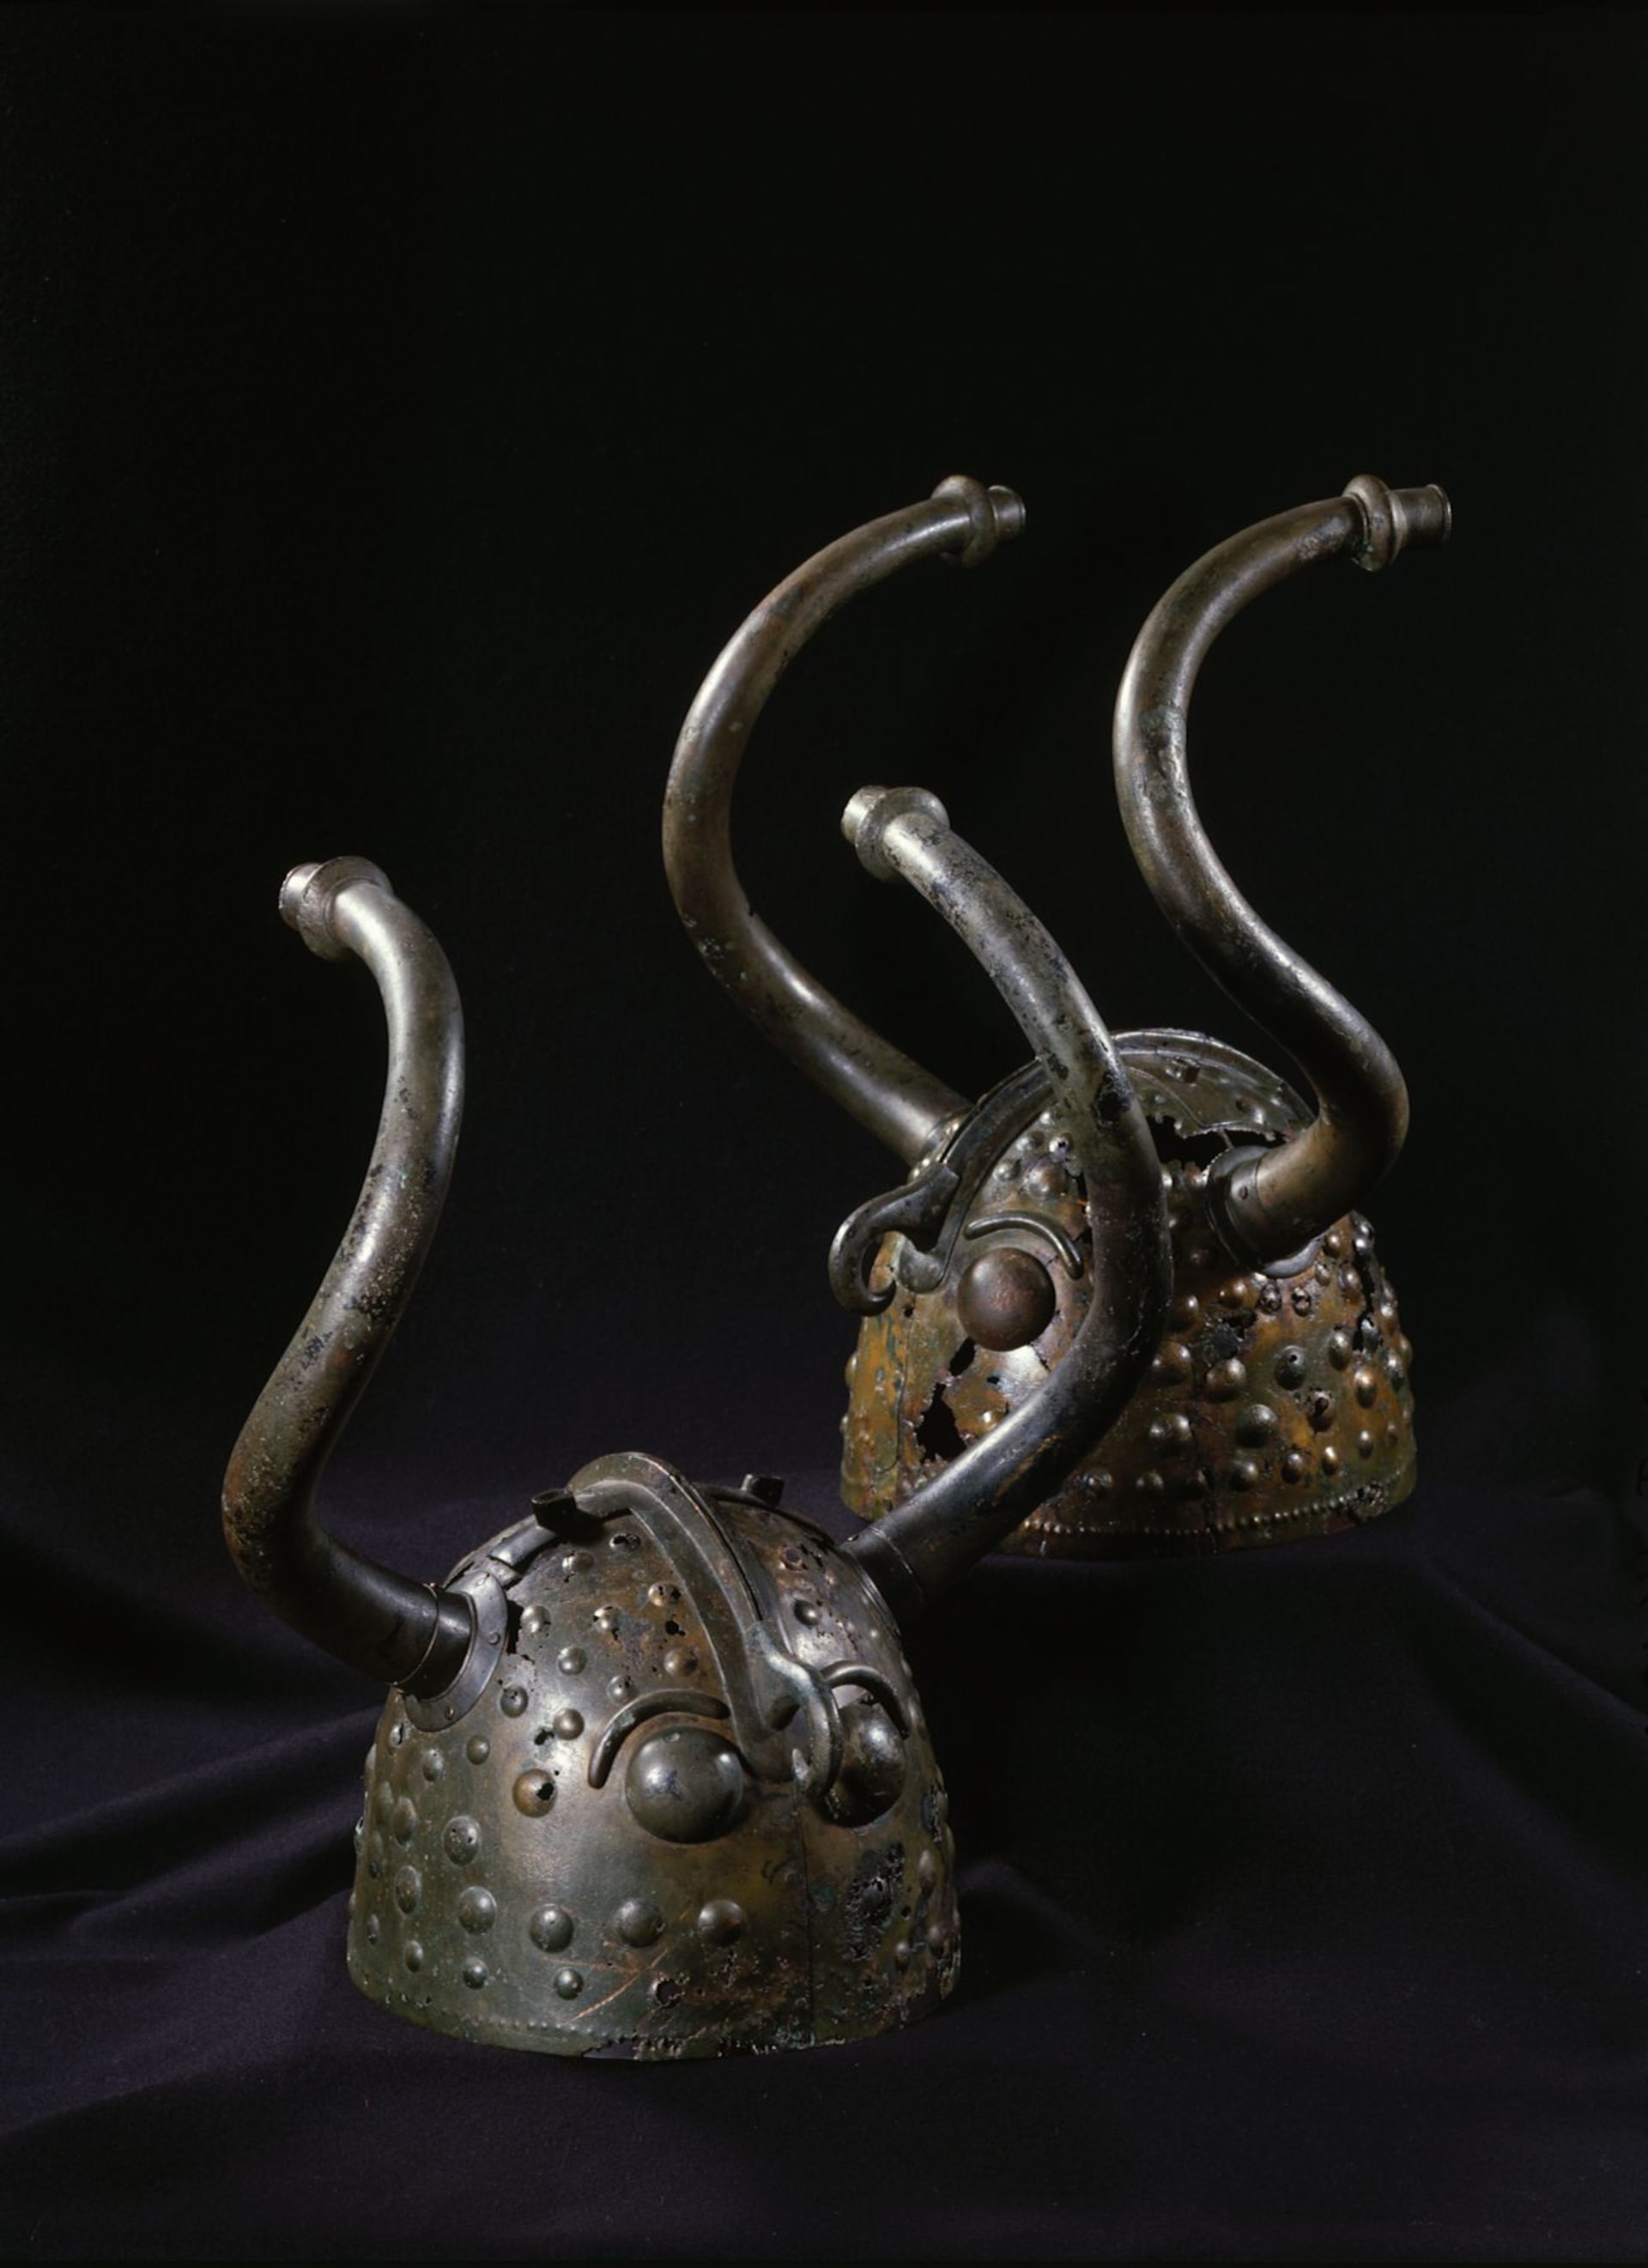 Ceremoniální helma z doby bronzové, nalezená nedaleko Veksø v Dánsku